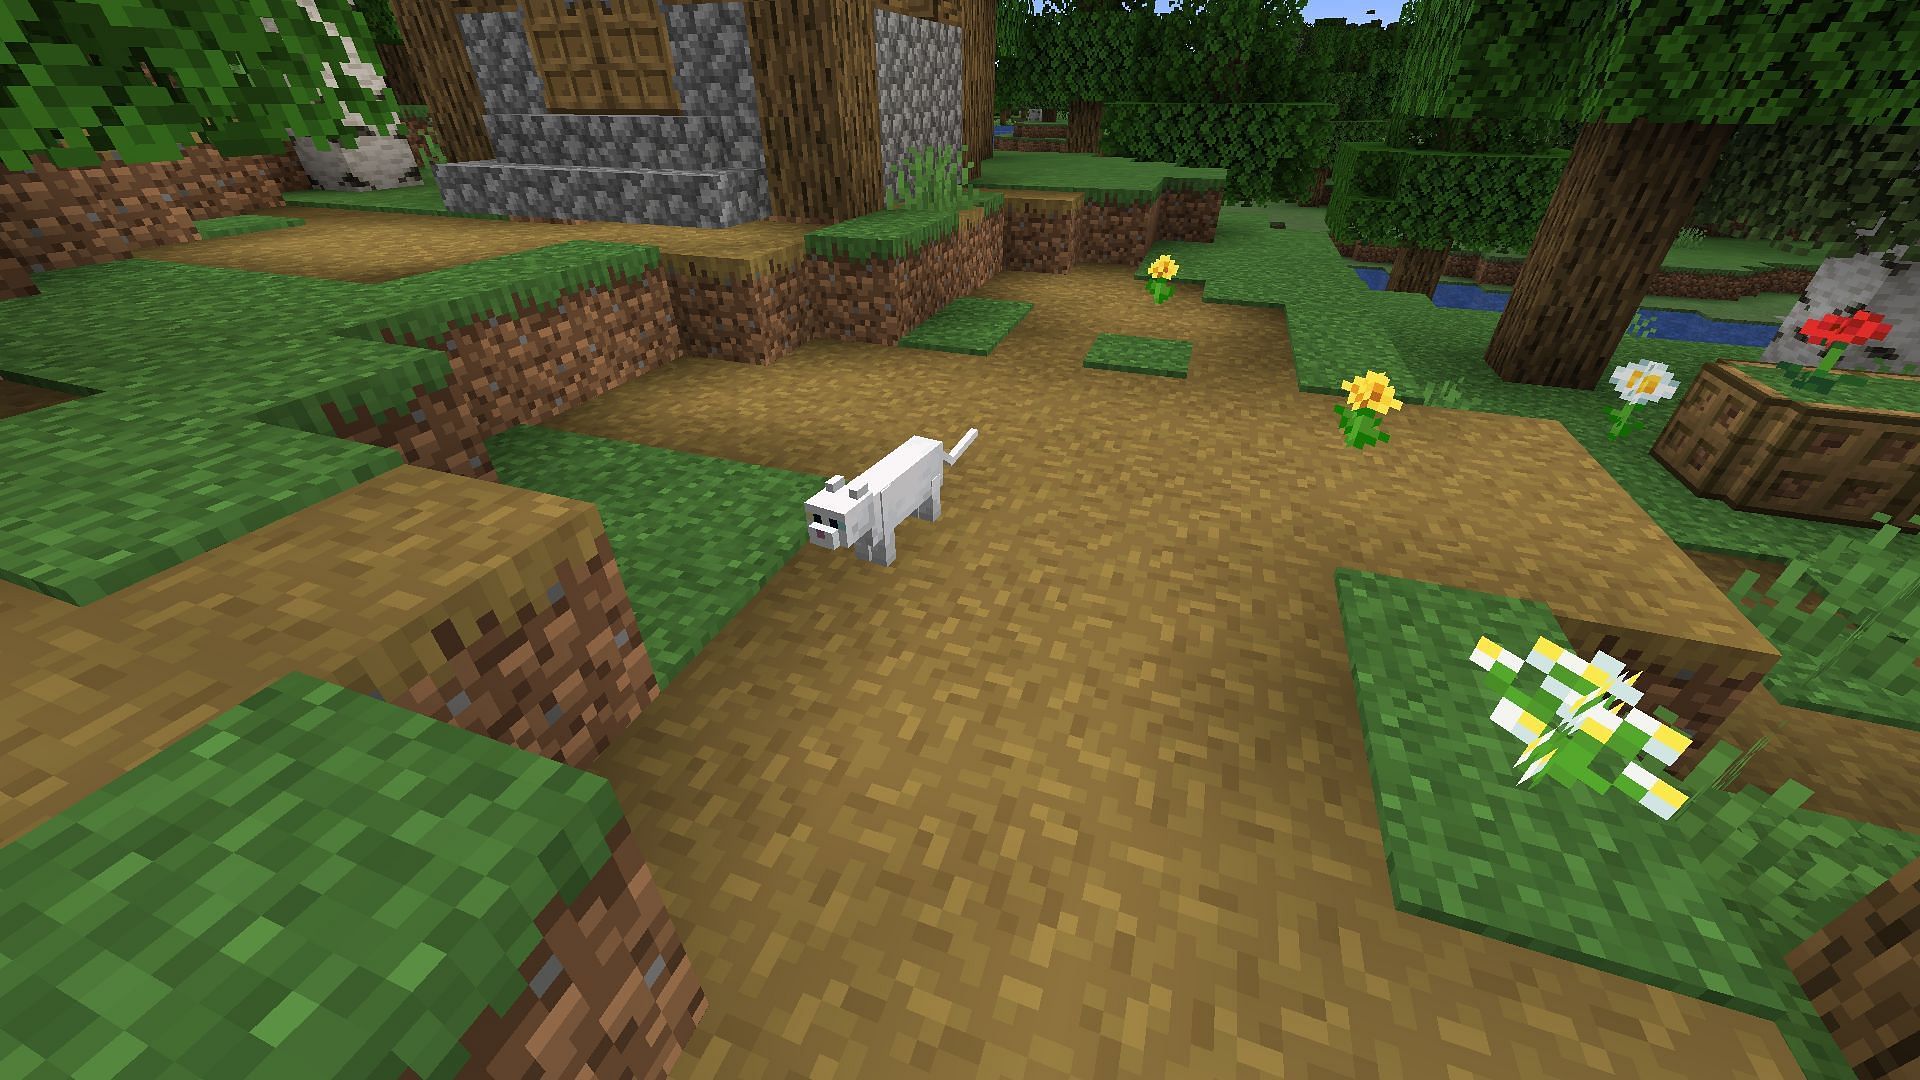 A cat found in a village (Image via Minecraft)